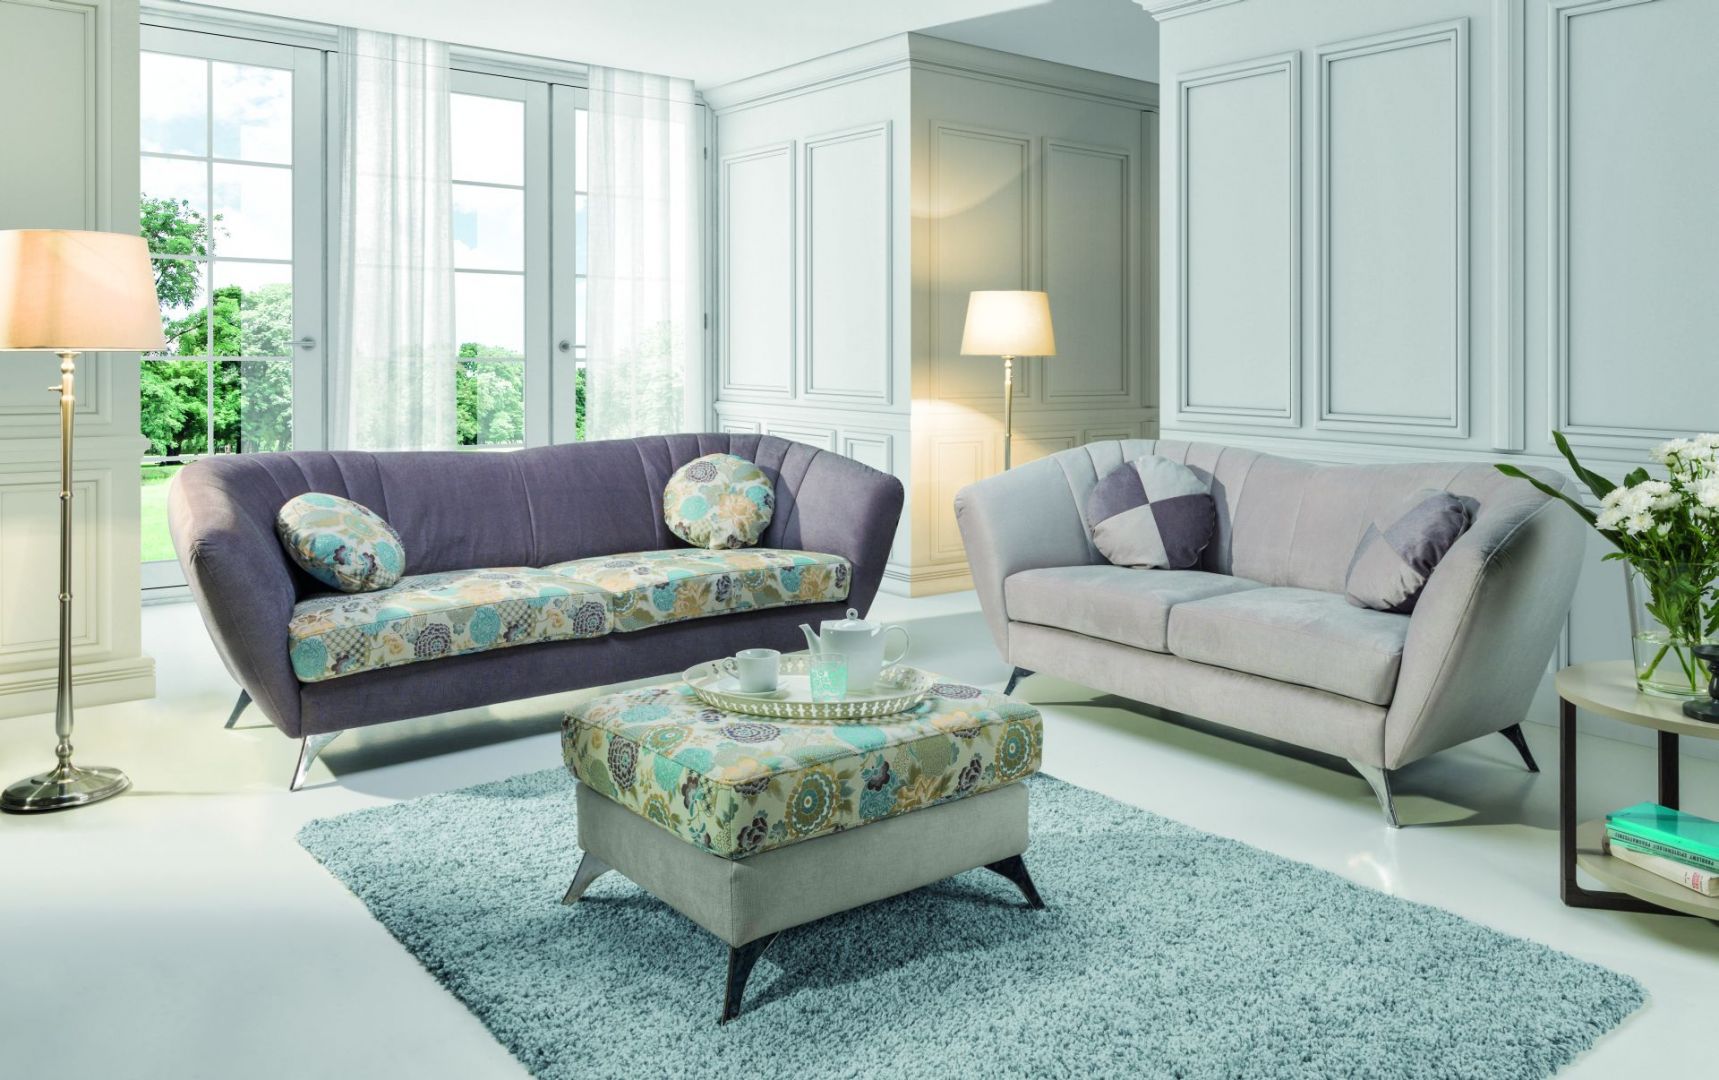 Vittorio to zestaw eleganckich sof, które tworzą ze sobą harmonijną całość. Meble idealne do salonu - klasyczne, zarazem stylowe. Fot. Stagra 